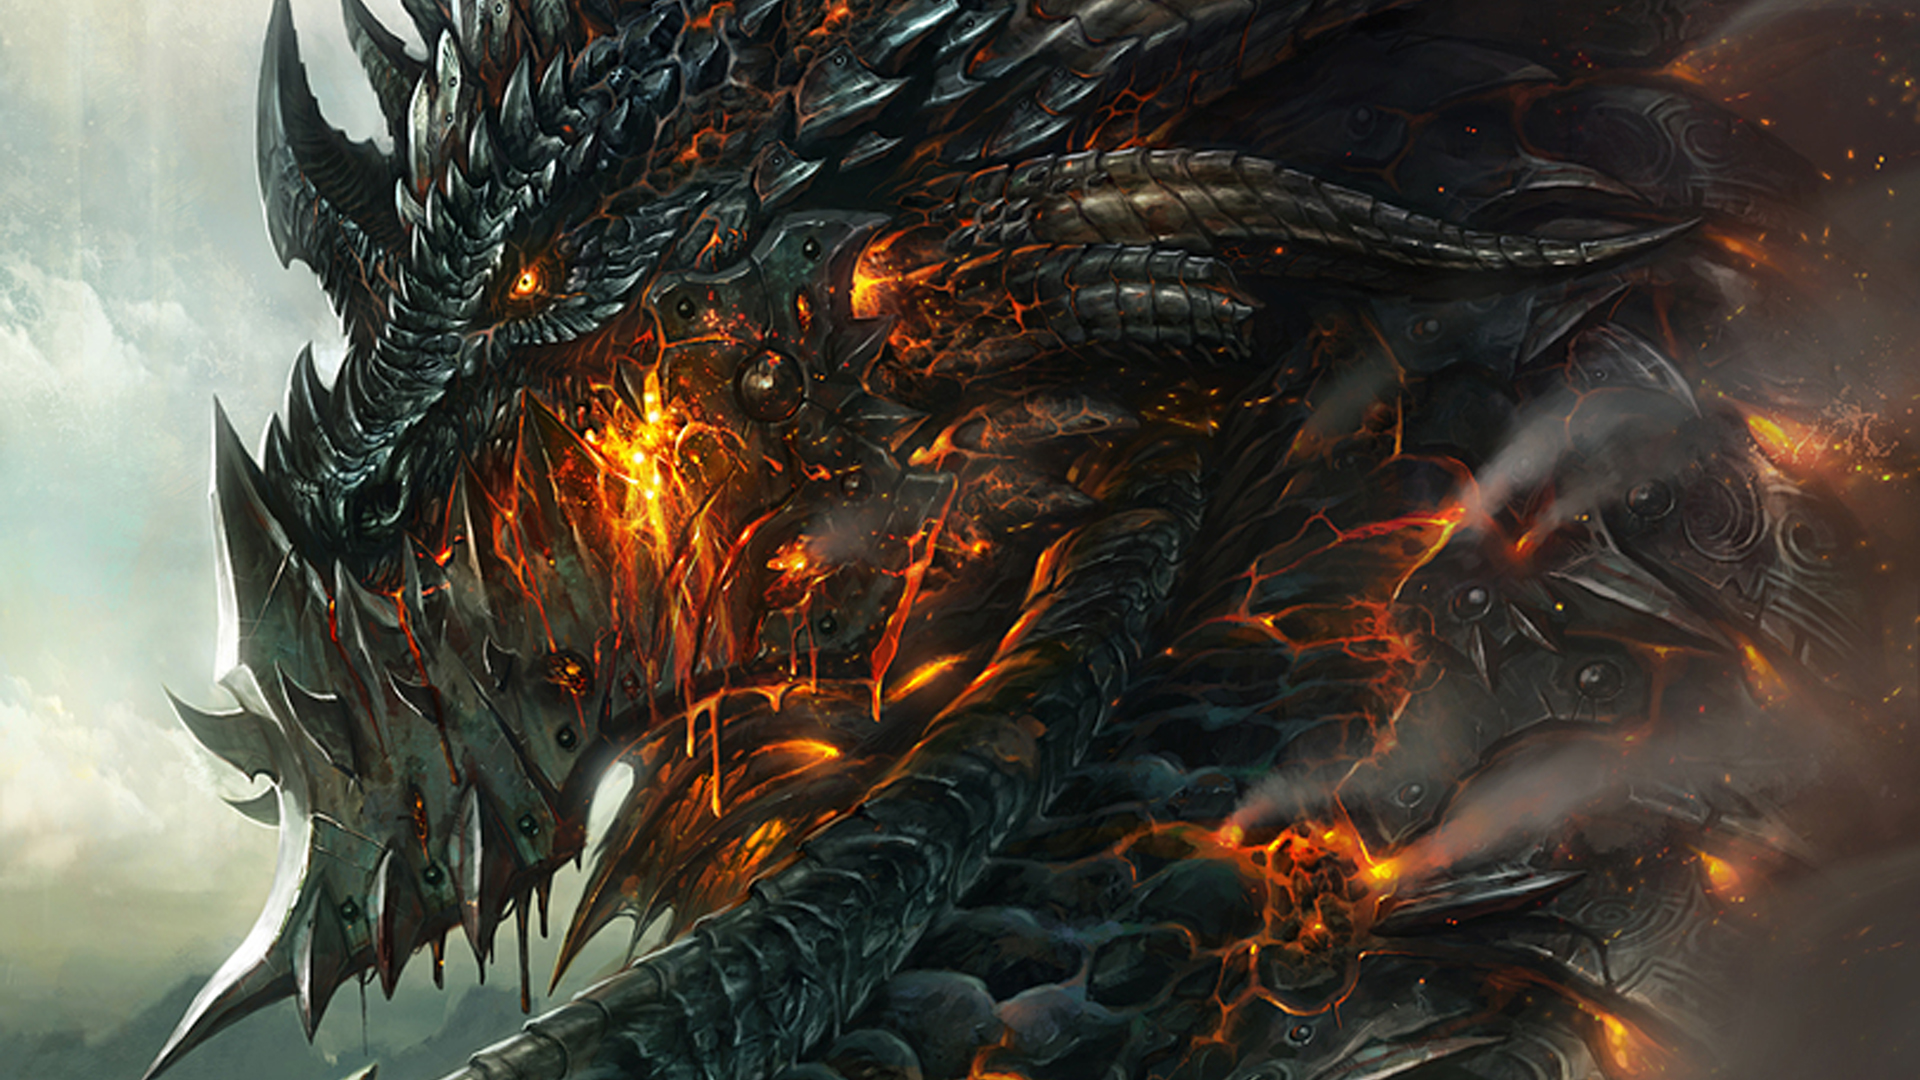 Cool dragon wallpaper